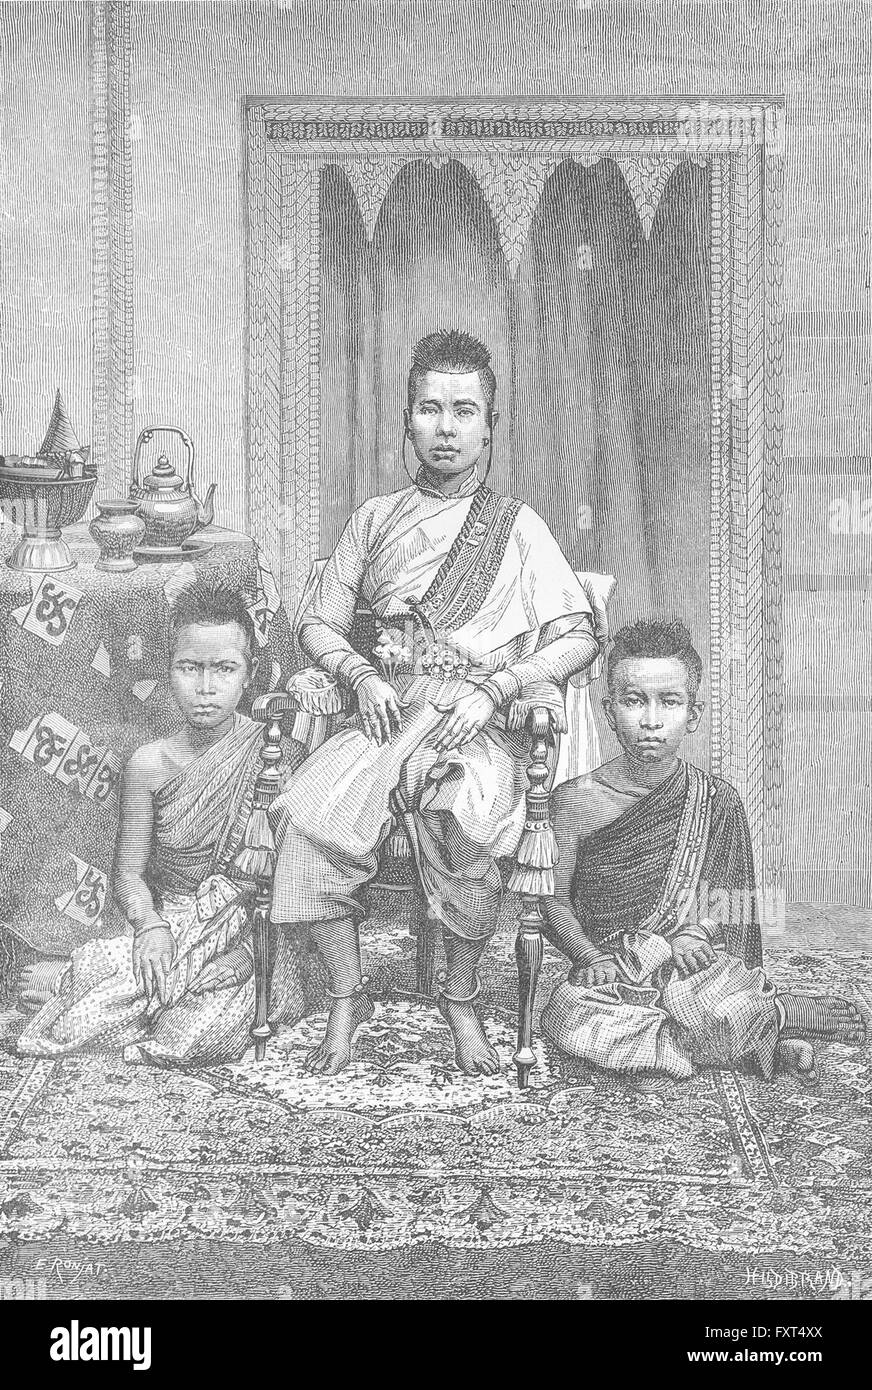 Cambogia: Types-Queen cambogiano Madre, antica stampa c1885 Foto Stock